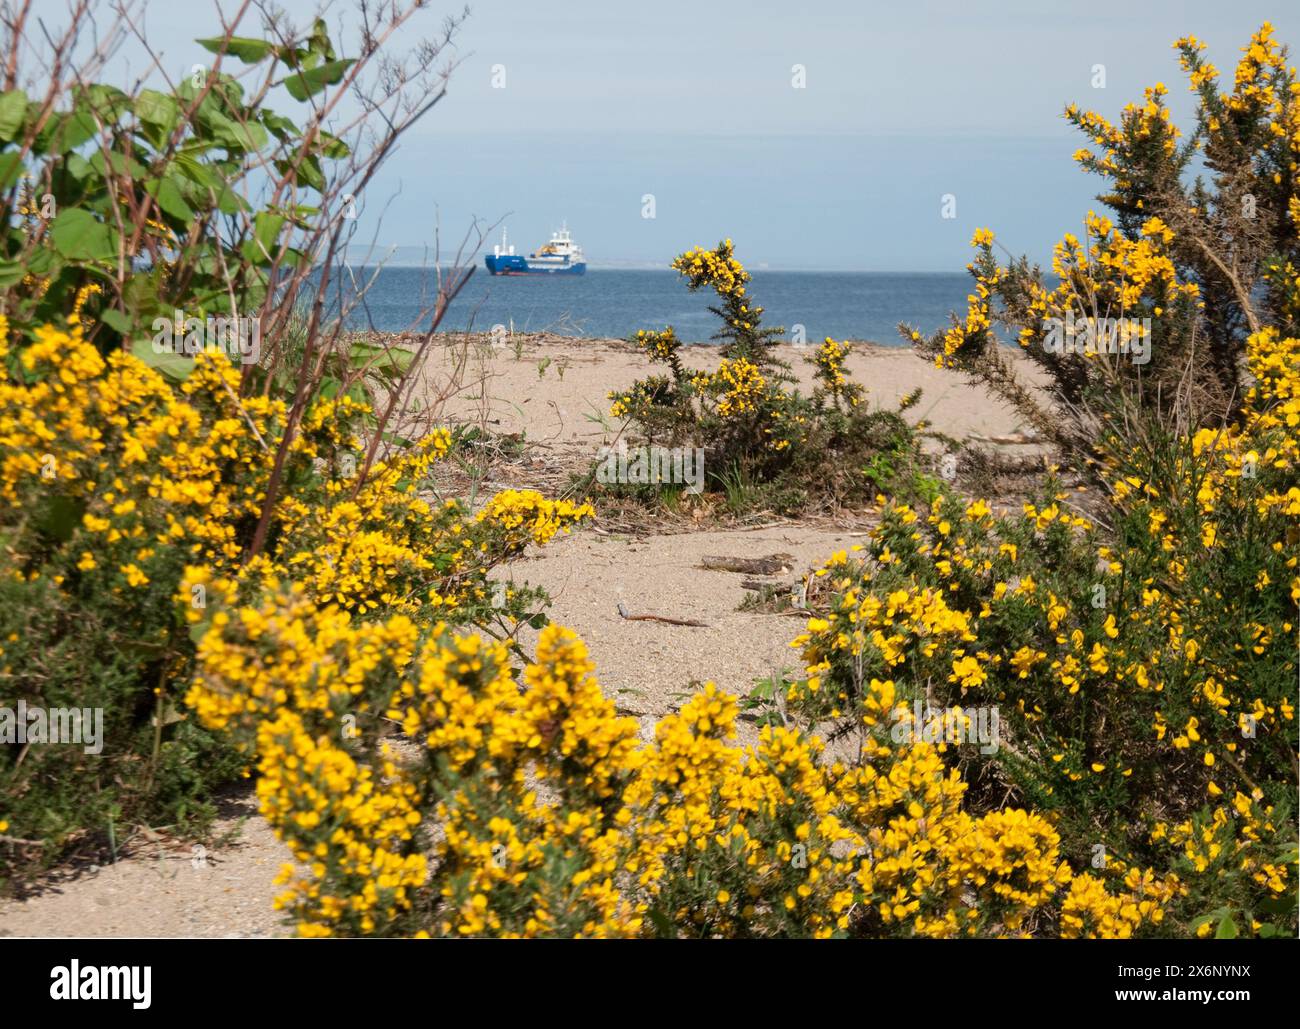 Nave a Brodick Bay, Brodick, isola di Arran, Scozia, Regno Unito - spiaggia sabbiosa; cespugli di gorse; vegetazione; cespugli di gorse in fiore Foto Stock